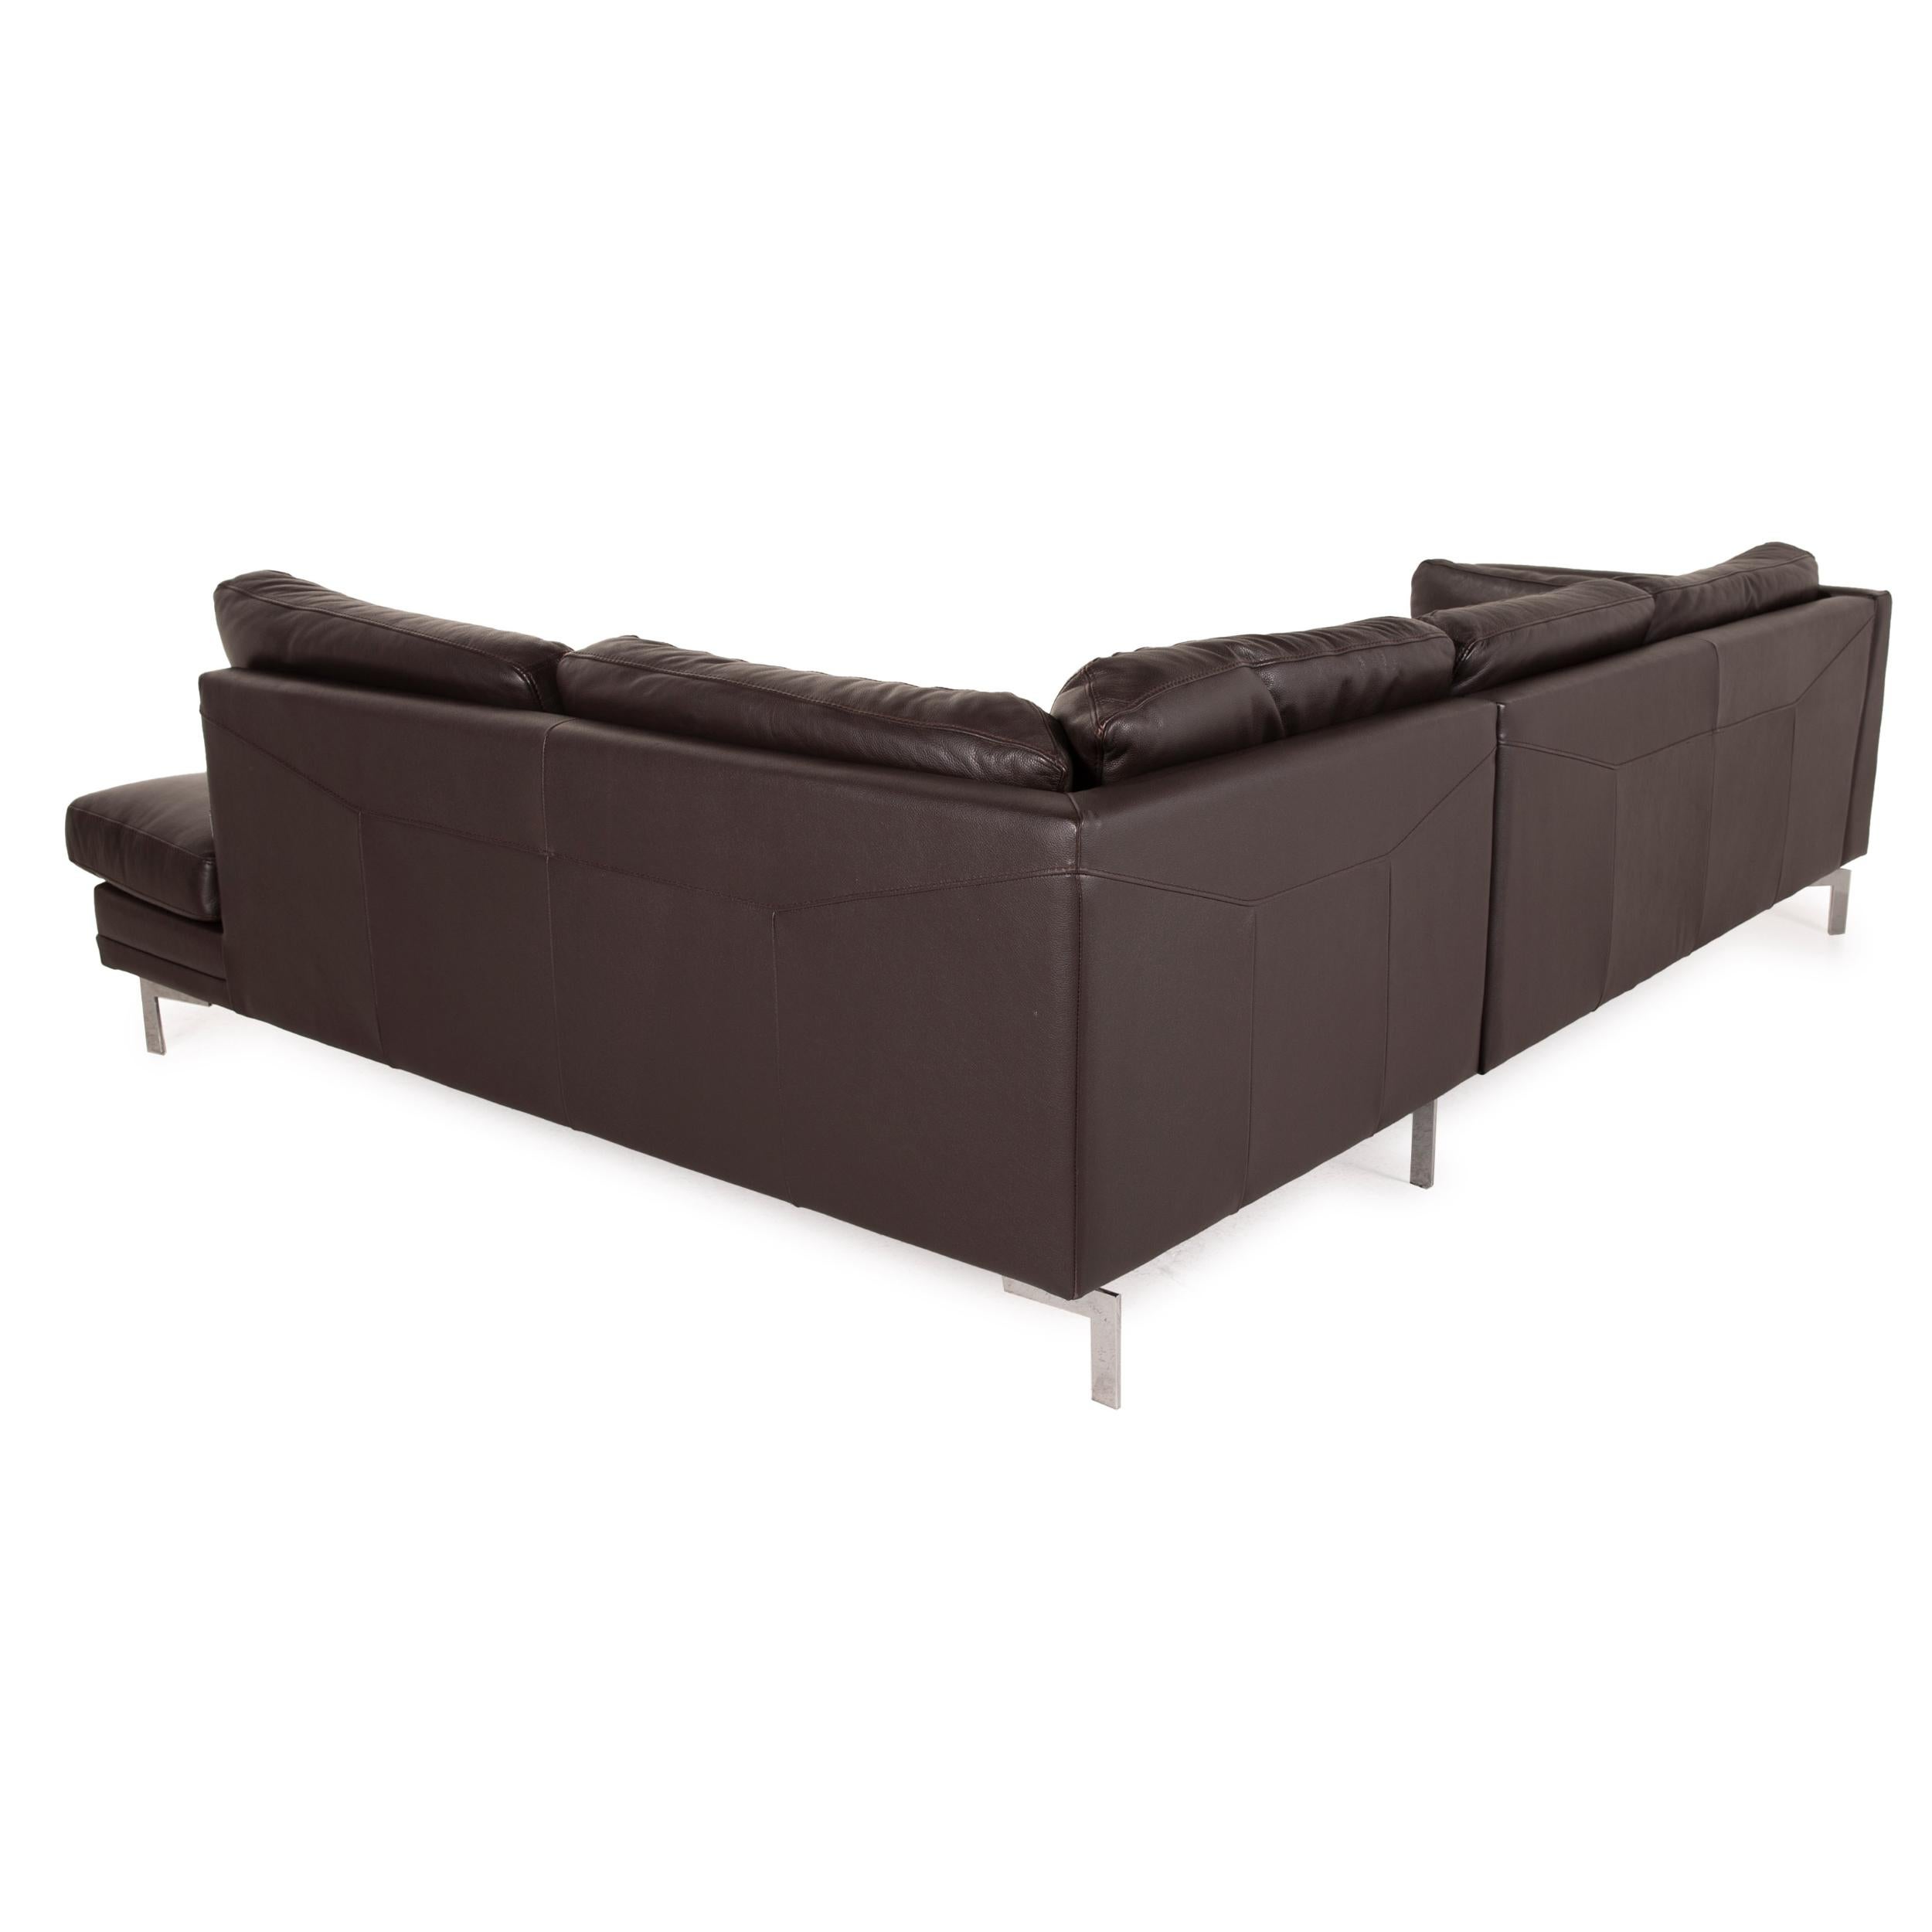 Furninova leather sofa dark brown corner sofa couch In Good Condition For Sale In Cologne, DE